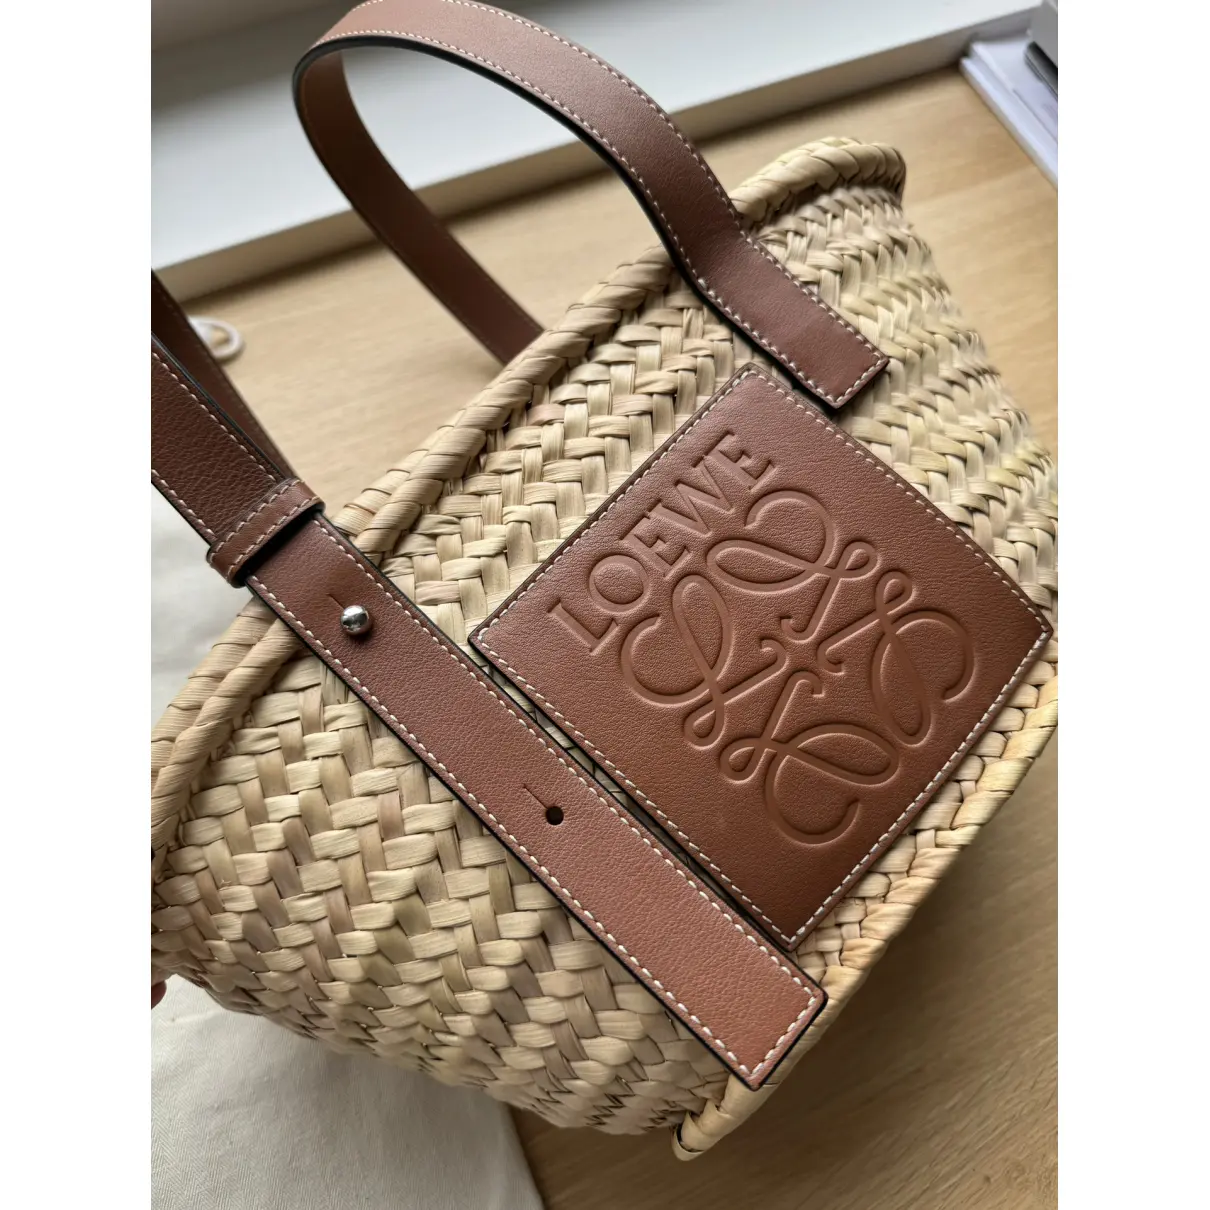 Buy Loewe Basket Bag leather tote online